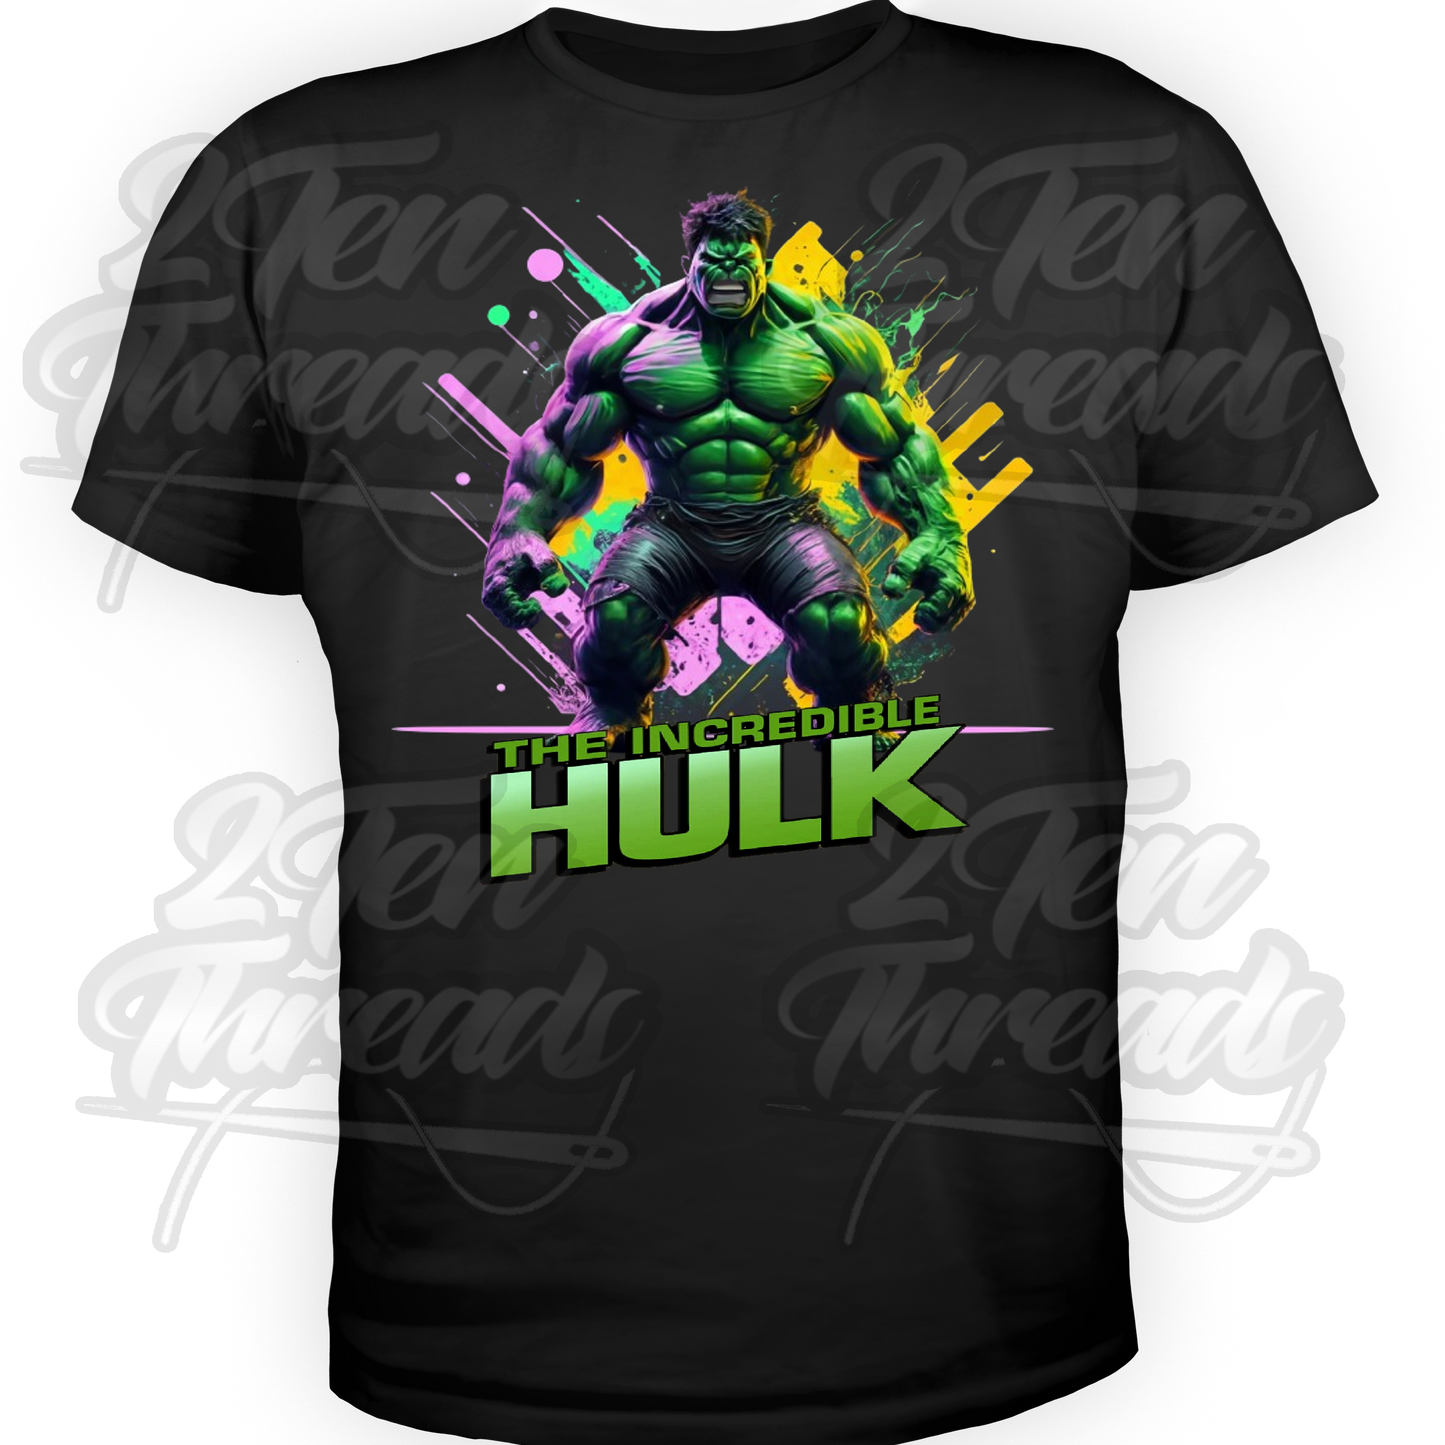 The Hulk Shirt